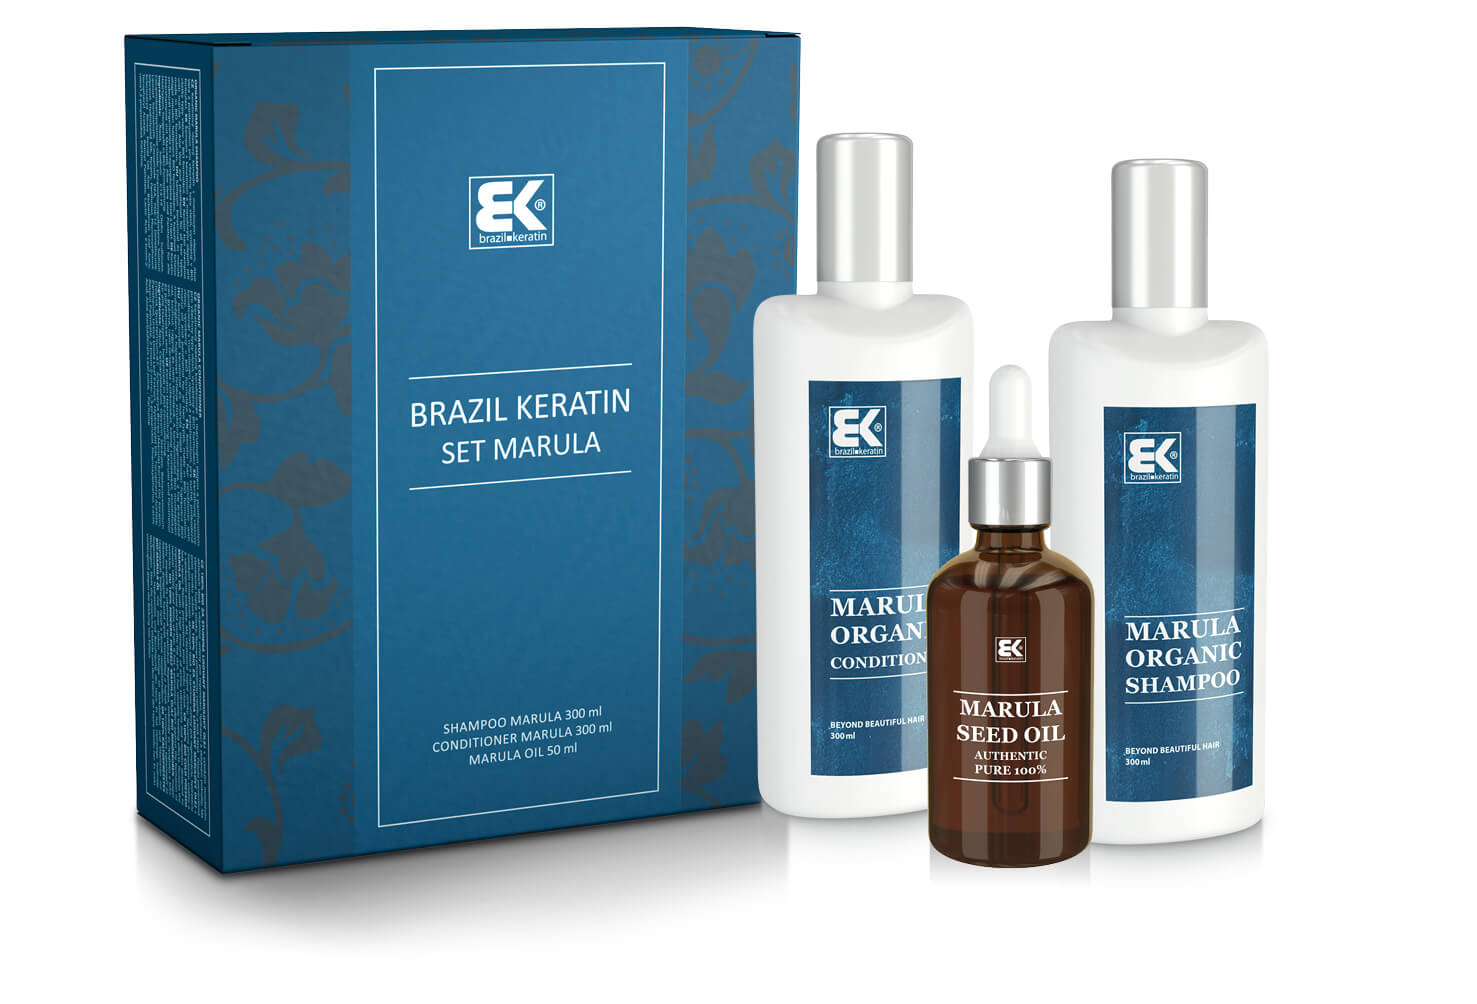 Brazil Keratin Darčeková sada Marula s prírodným exotickým olejom pre krásu a sviežosť vlasov i tela + 2 mesiace na vrátenie tovaru